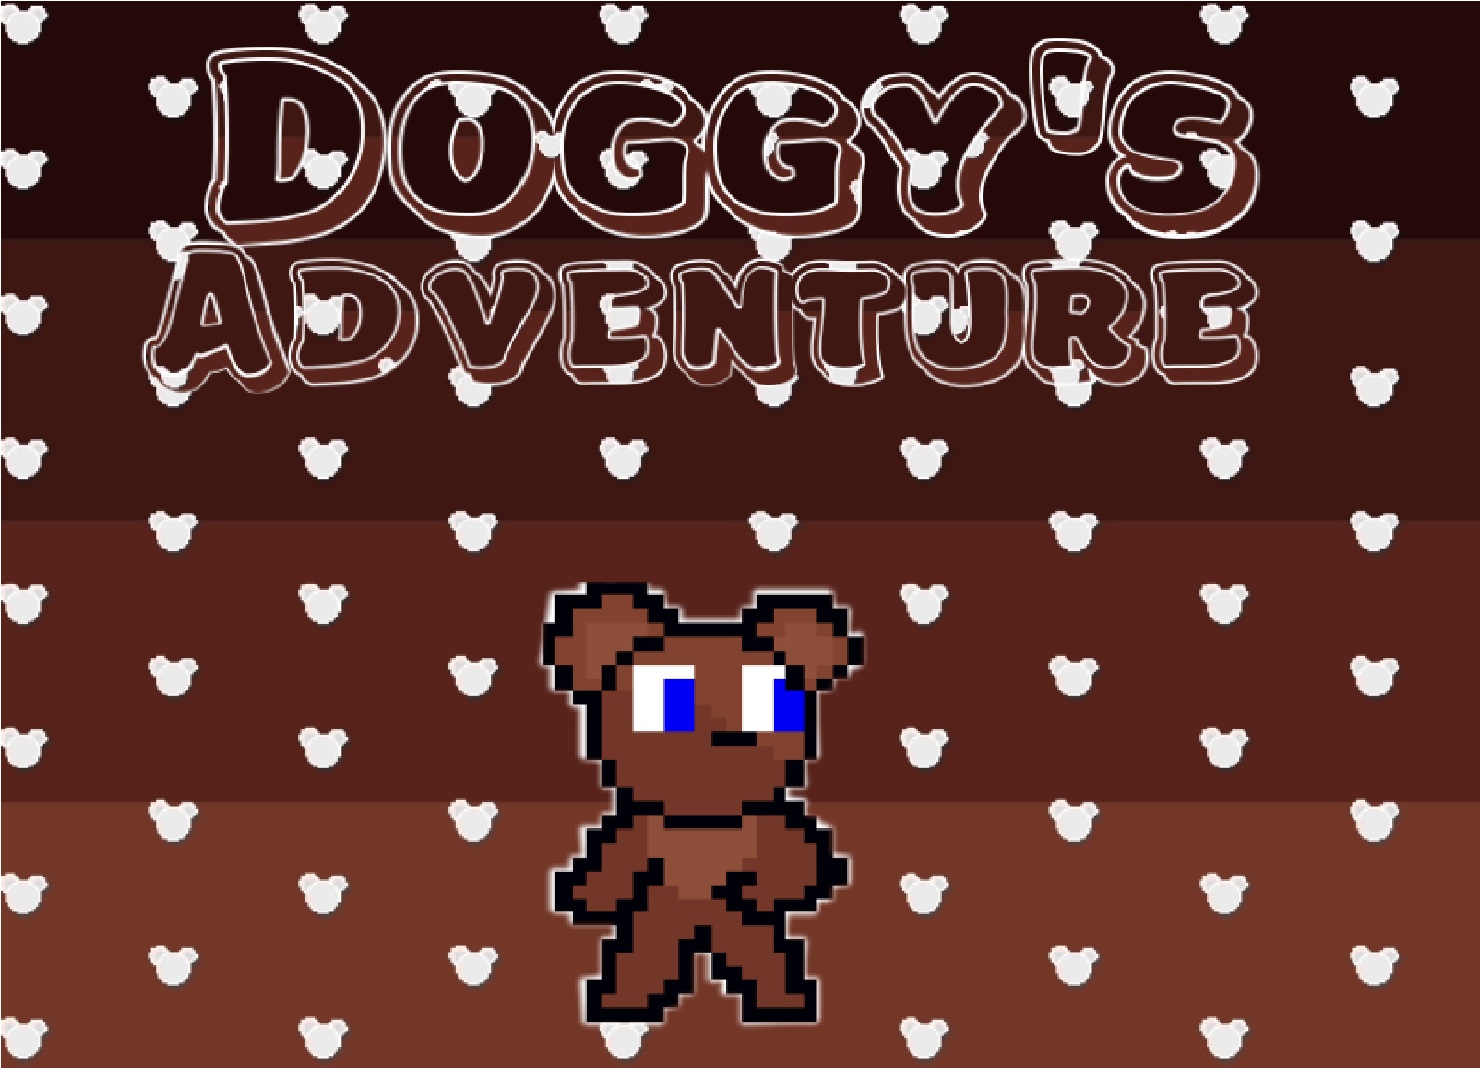 Doggy's Adventure